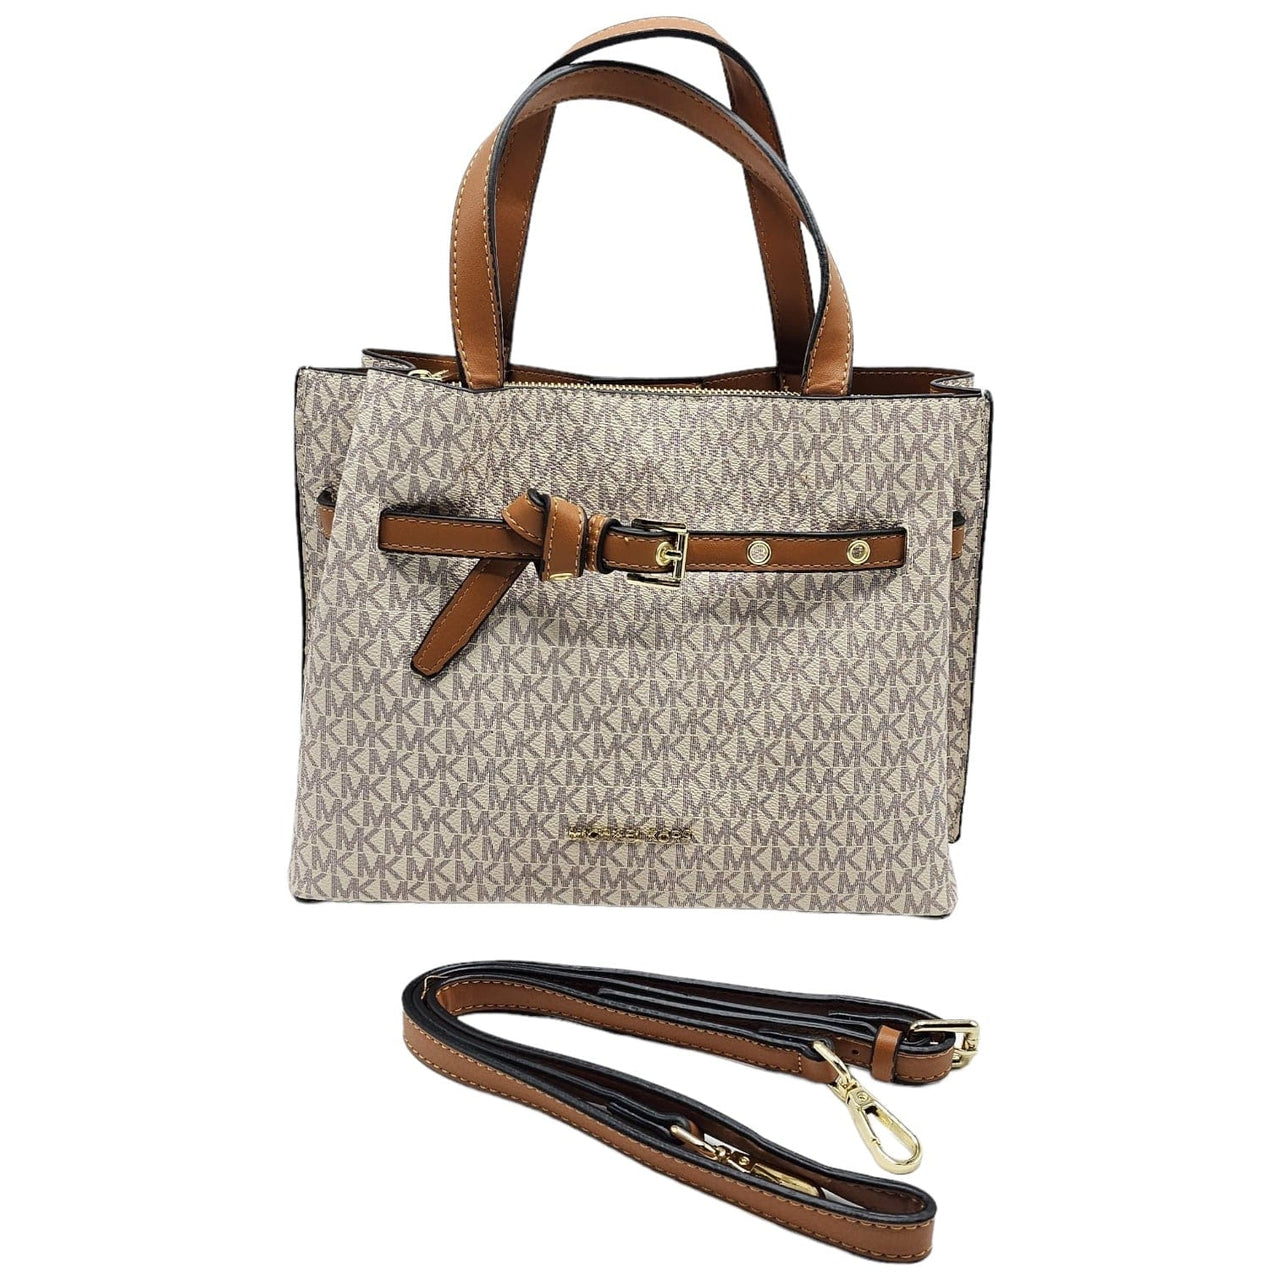 The Bag Couture Handbags, Wallets & Cases Michael Kors Emilia Small Logo Satchel Crossbody/Handbag Beige